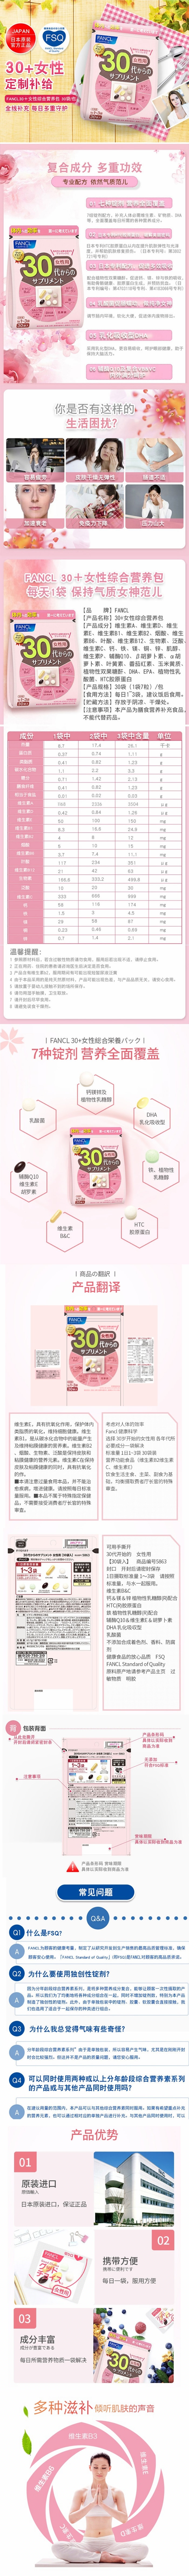 【日本直邮】日本FANCL芳珂 30岁以上女性专用保健营养品  30袋